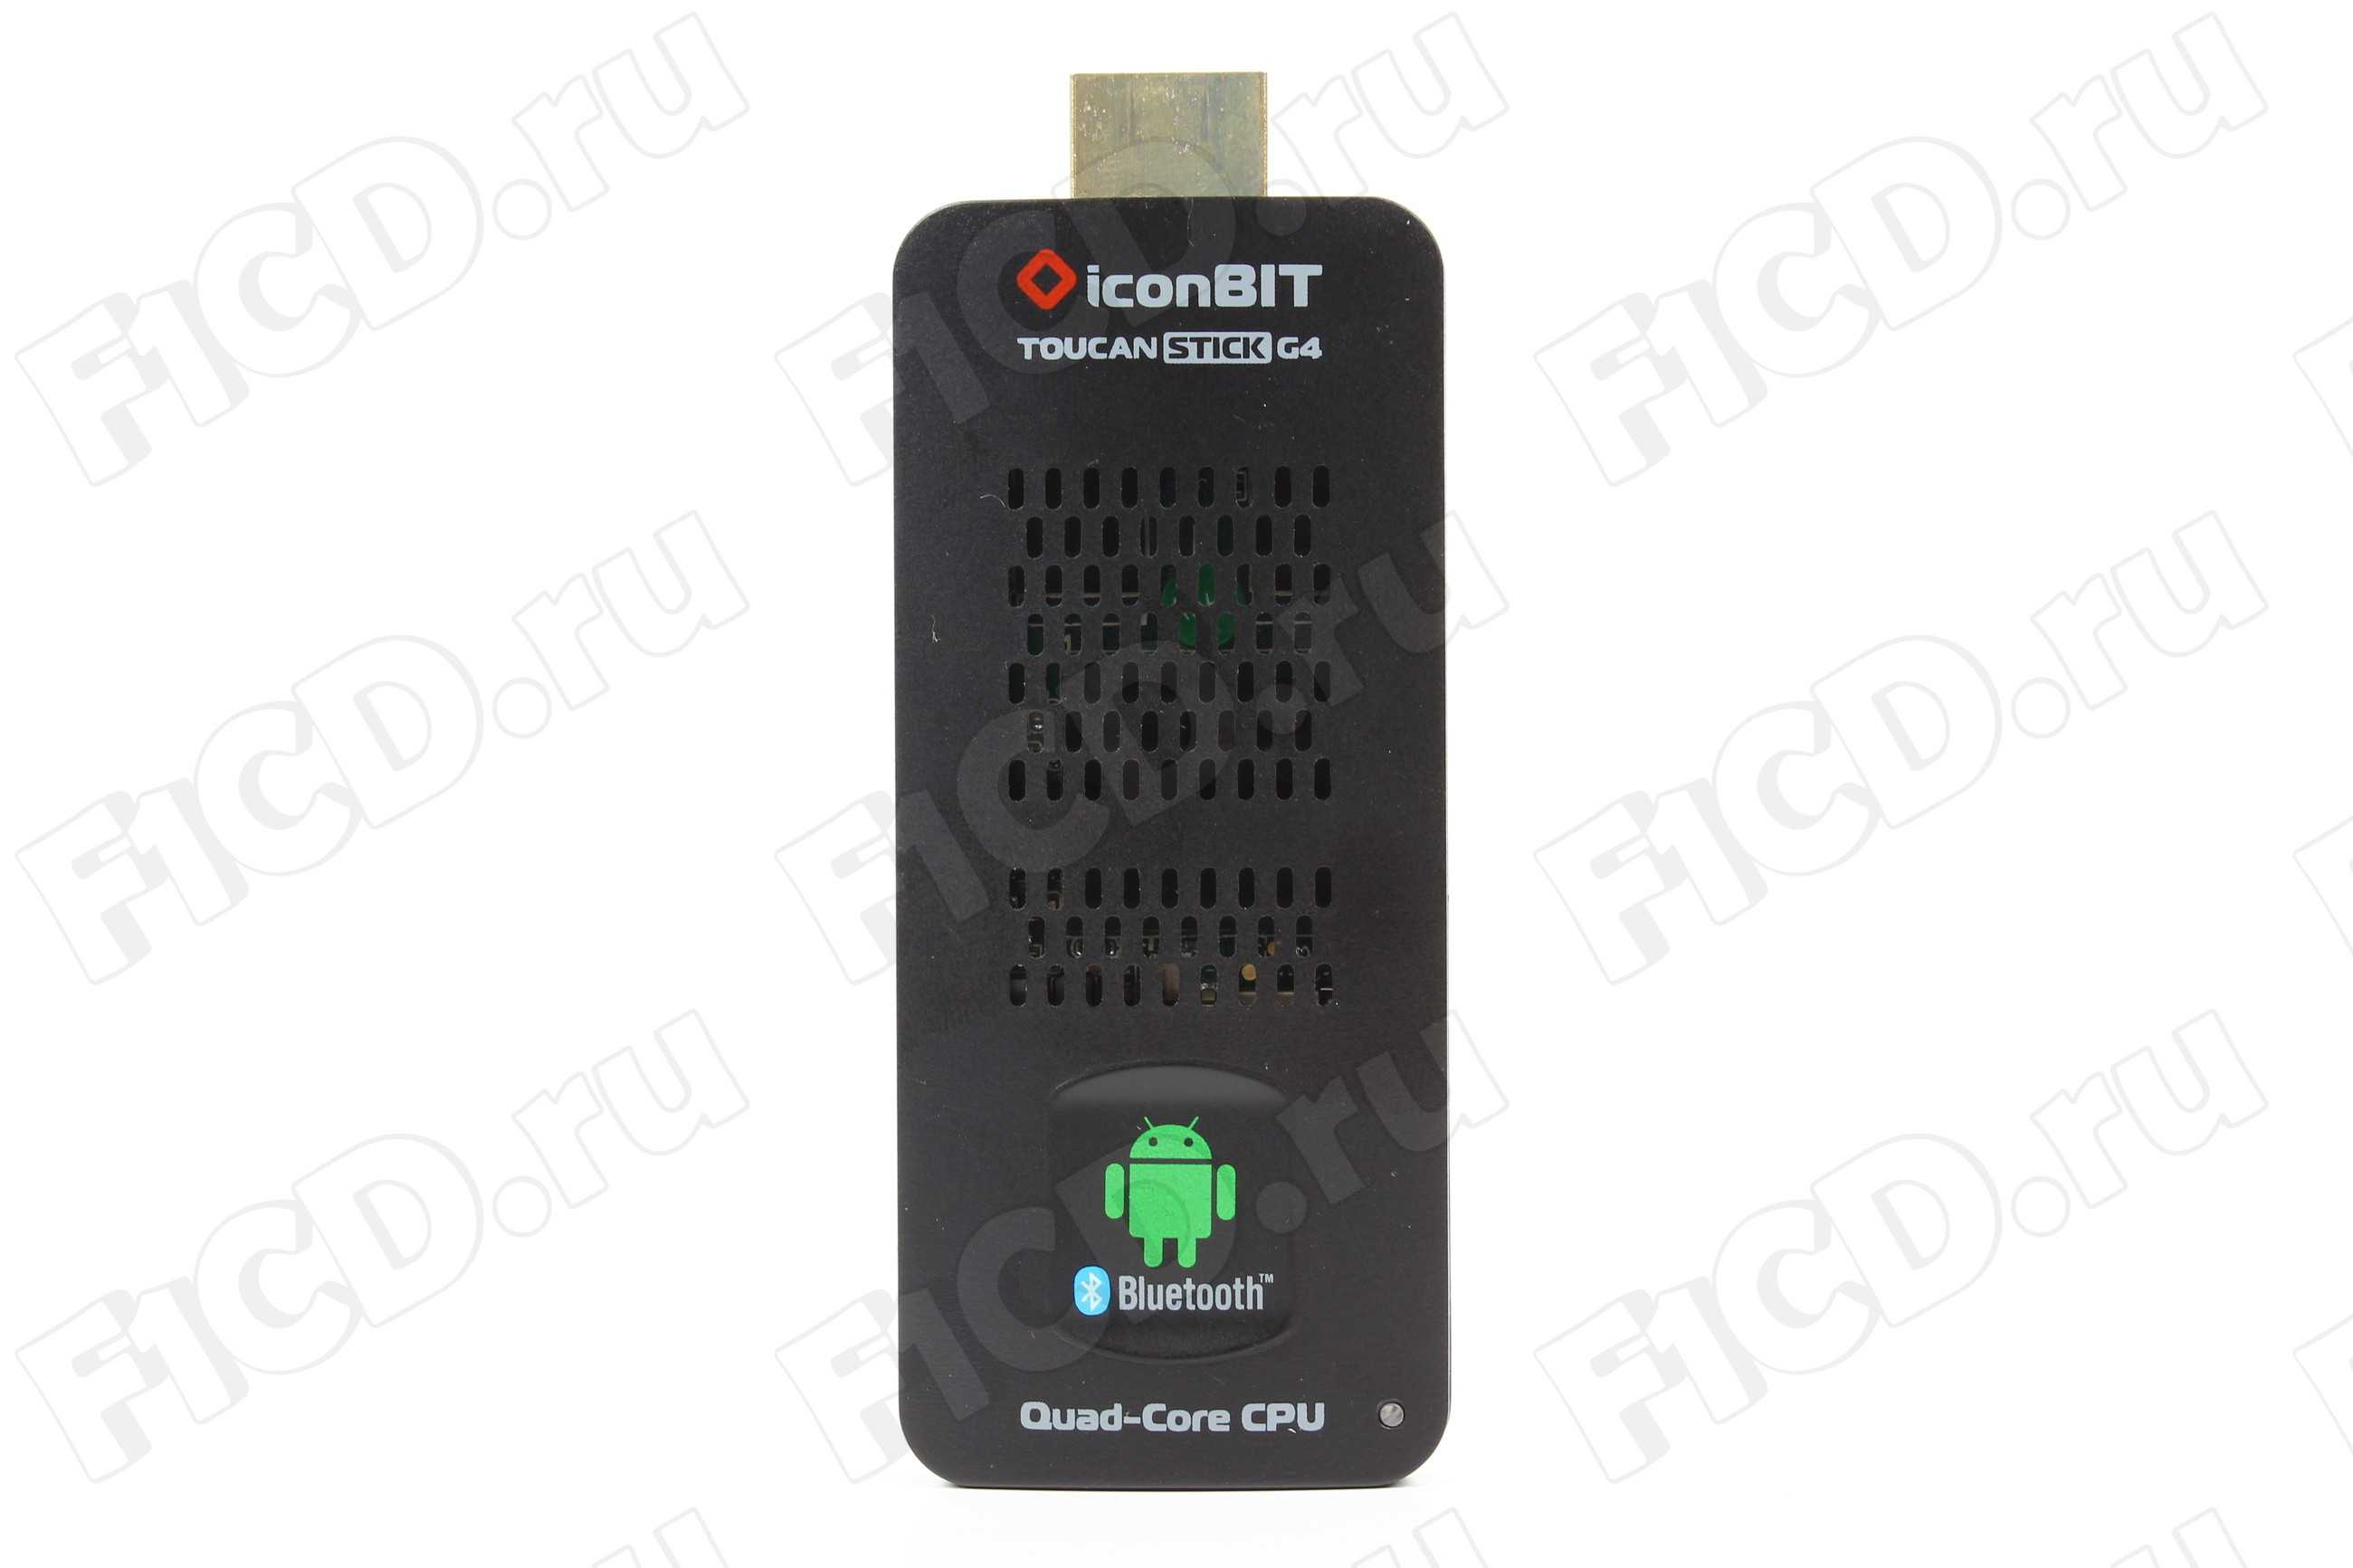 Iconbit toucan stick g3 купить по акционной цене , отзывы и обзоры.